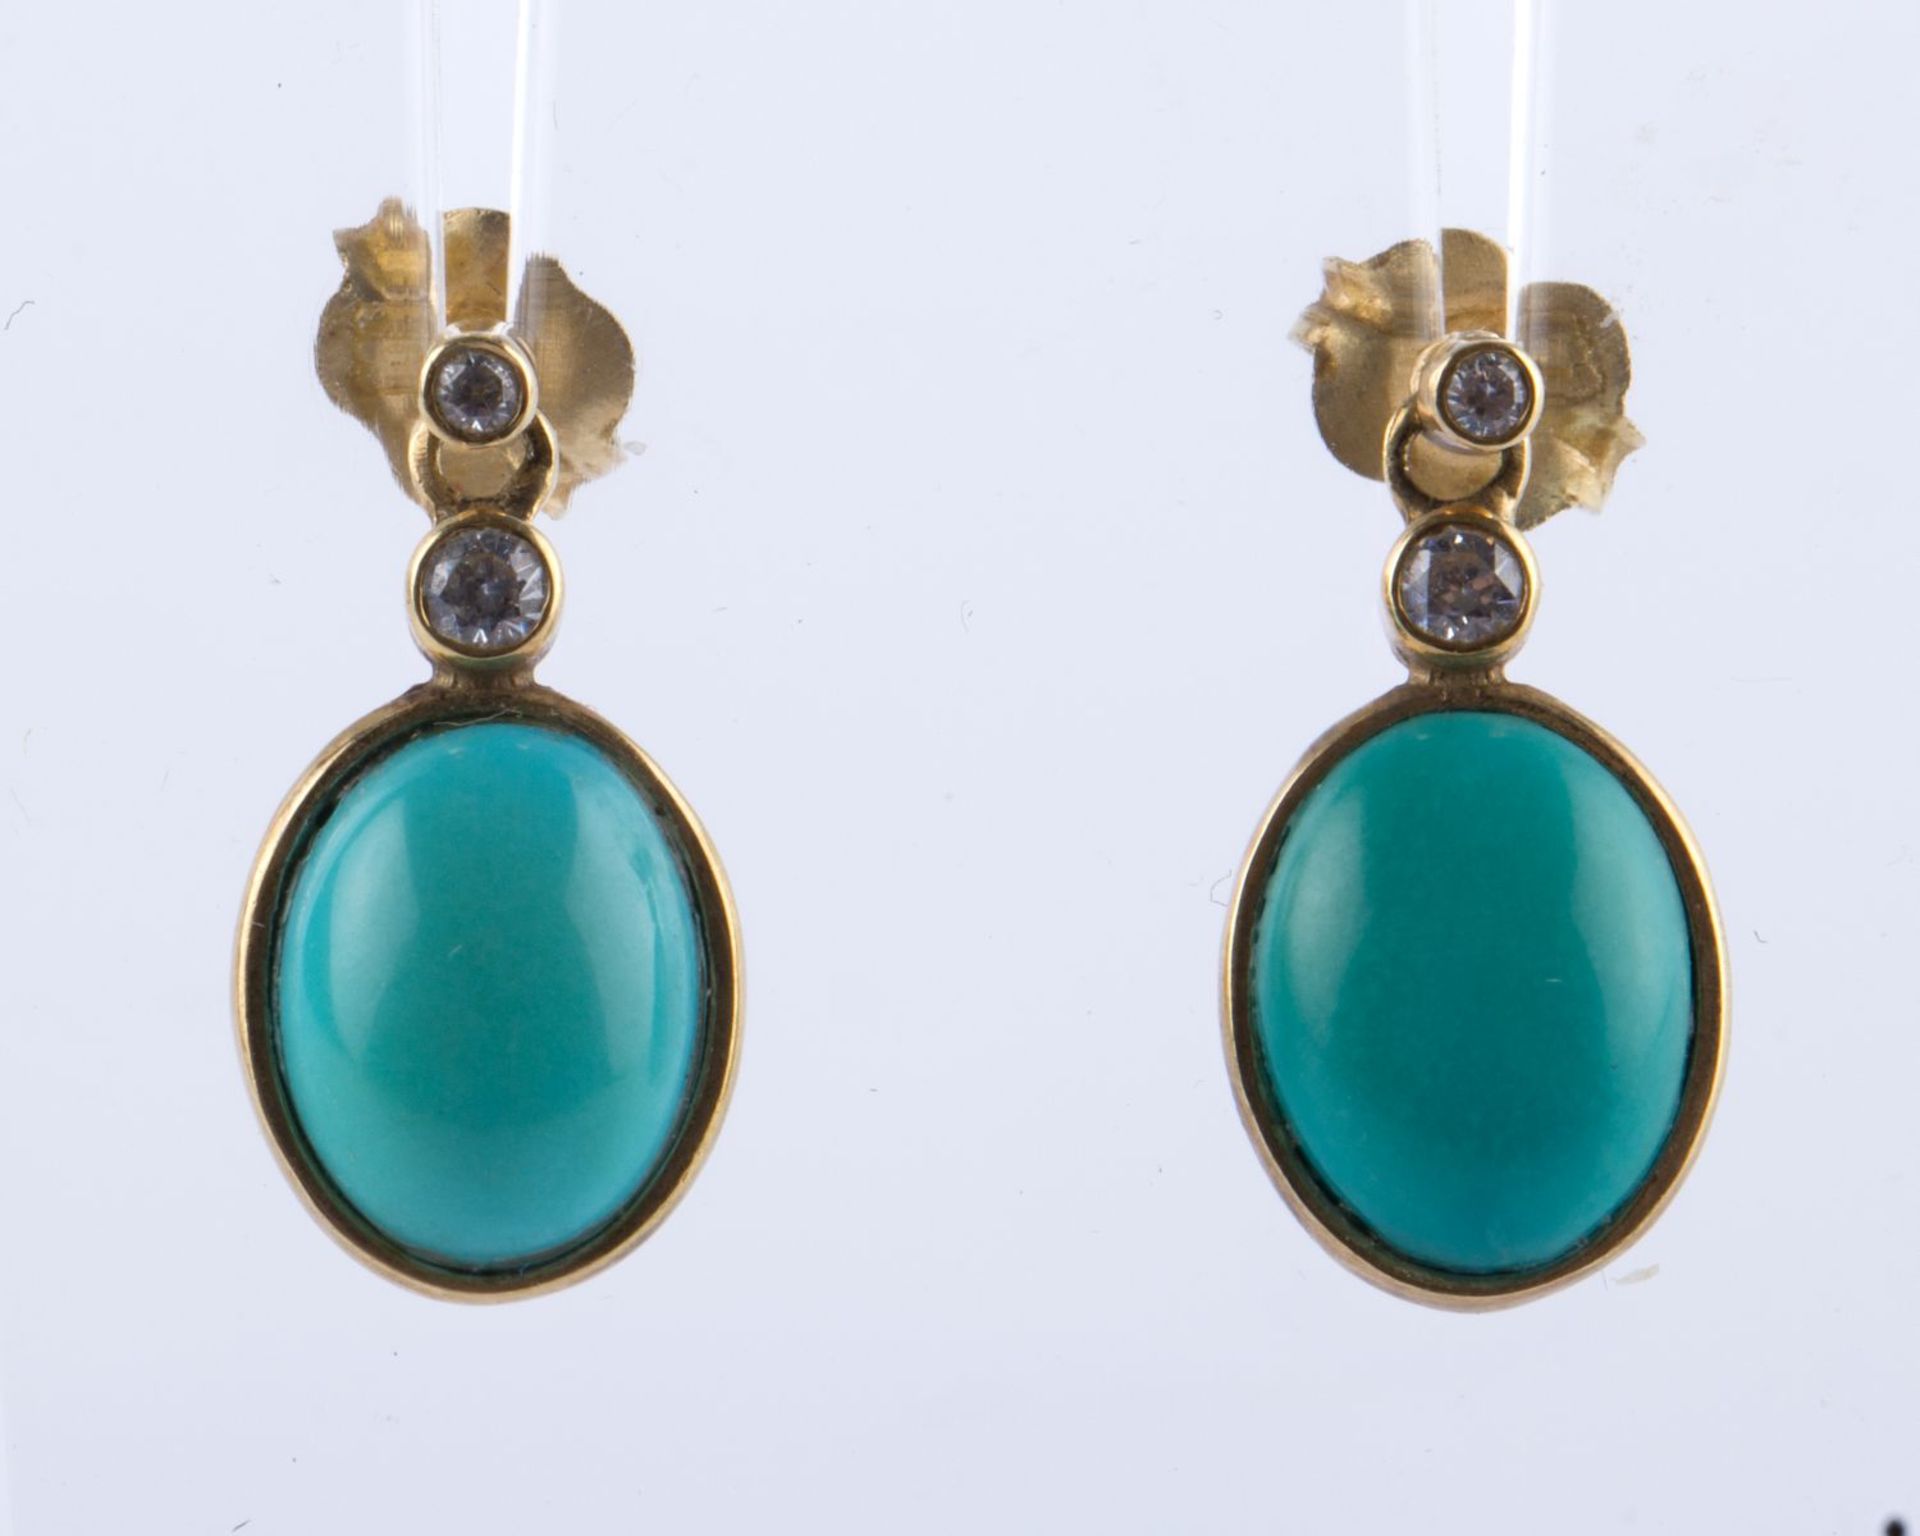 Ein Paar Türkis-Diamant-Ohrgehänge Gelbgold 585. Ausgefasst mit je 2 kleinen Dia. und anhängenden Tü